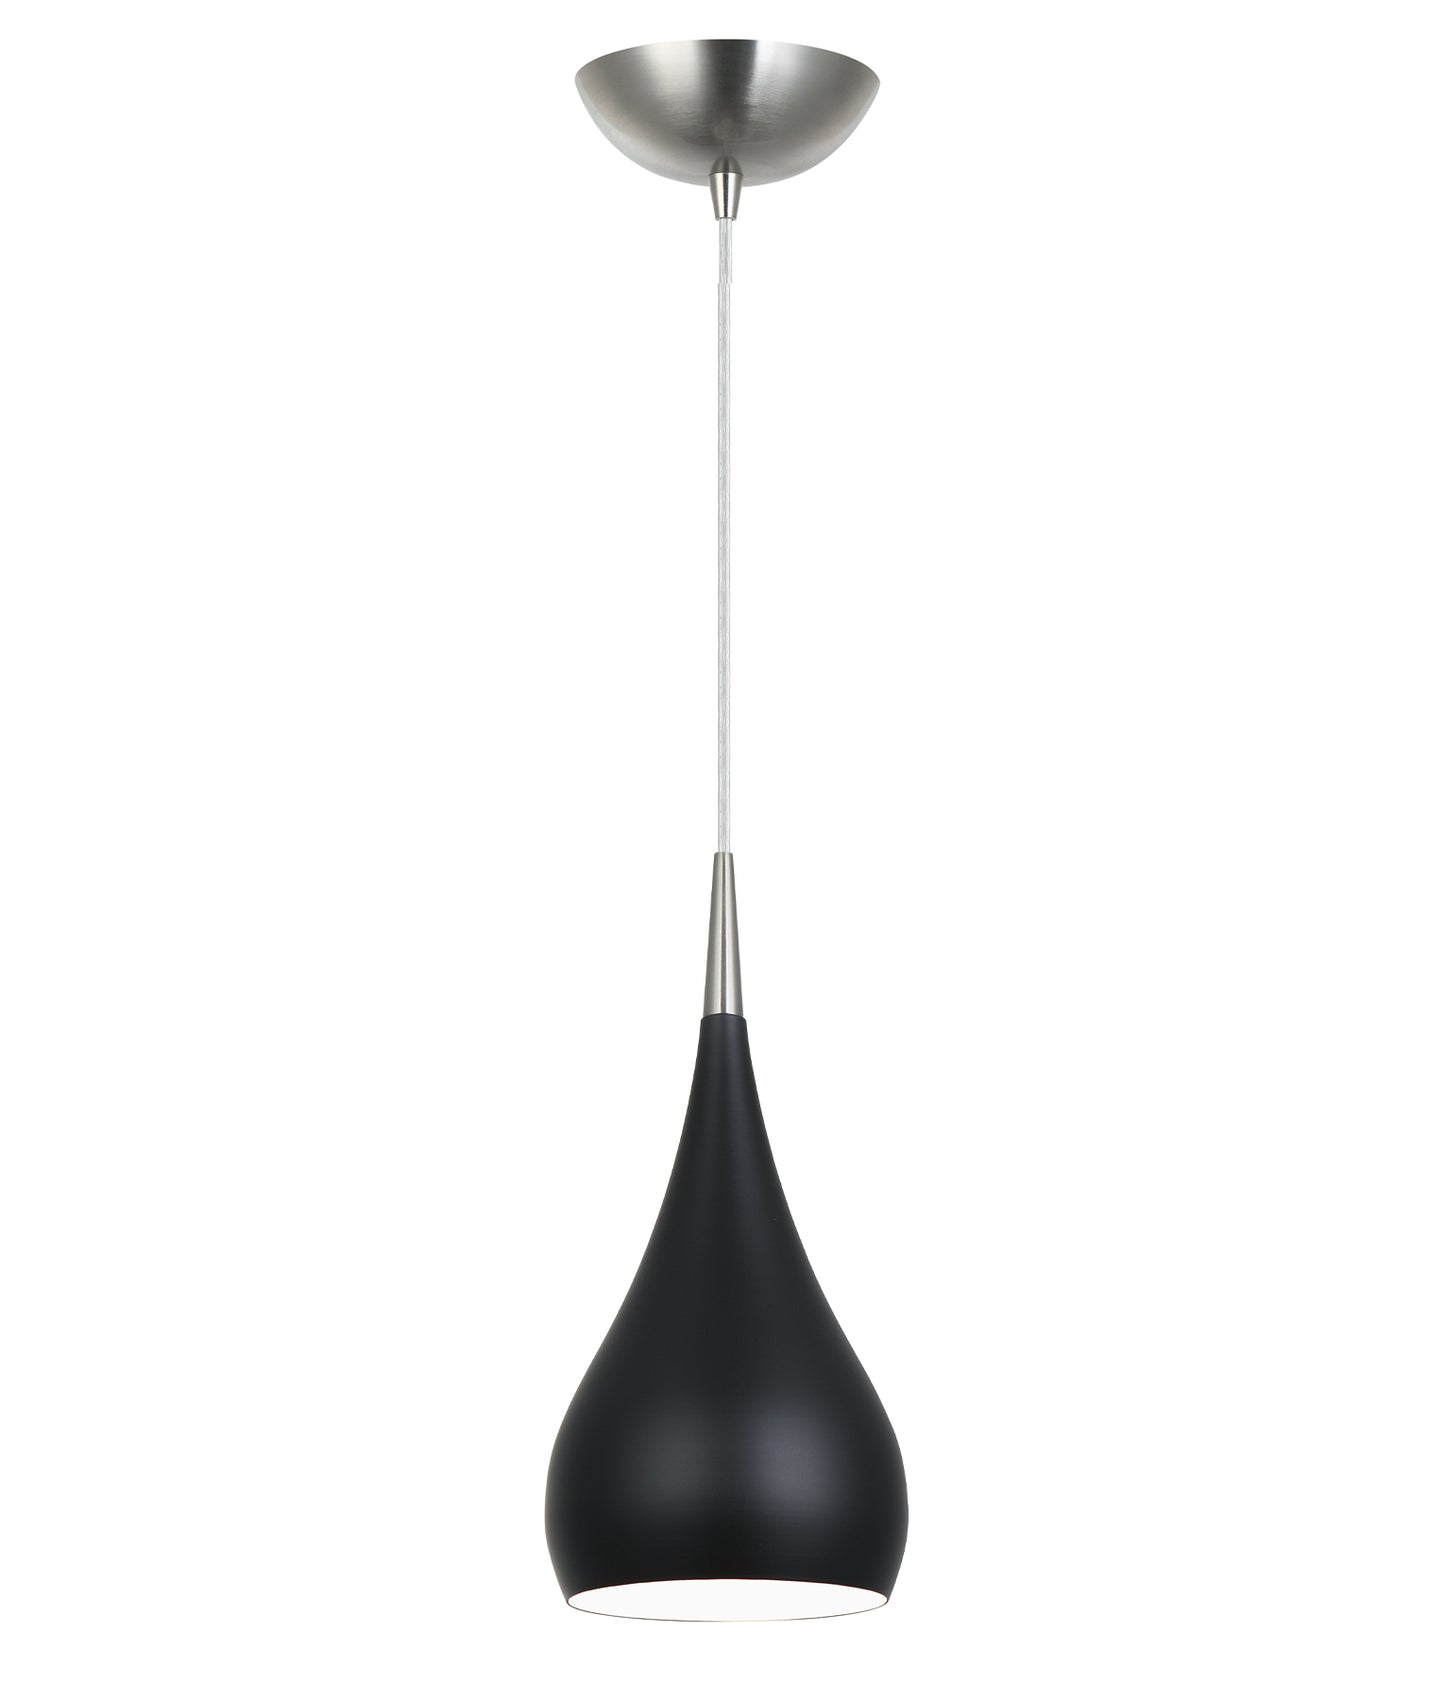 ZARA: Modern Bell Shape Pendant Lights